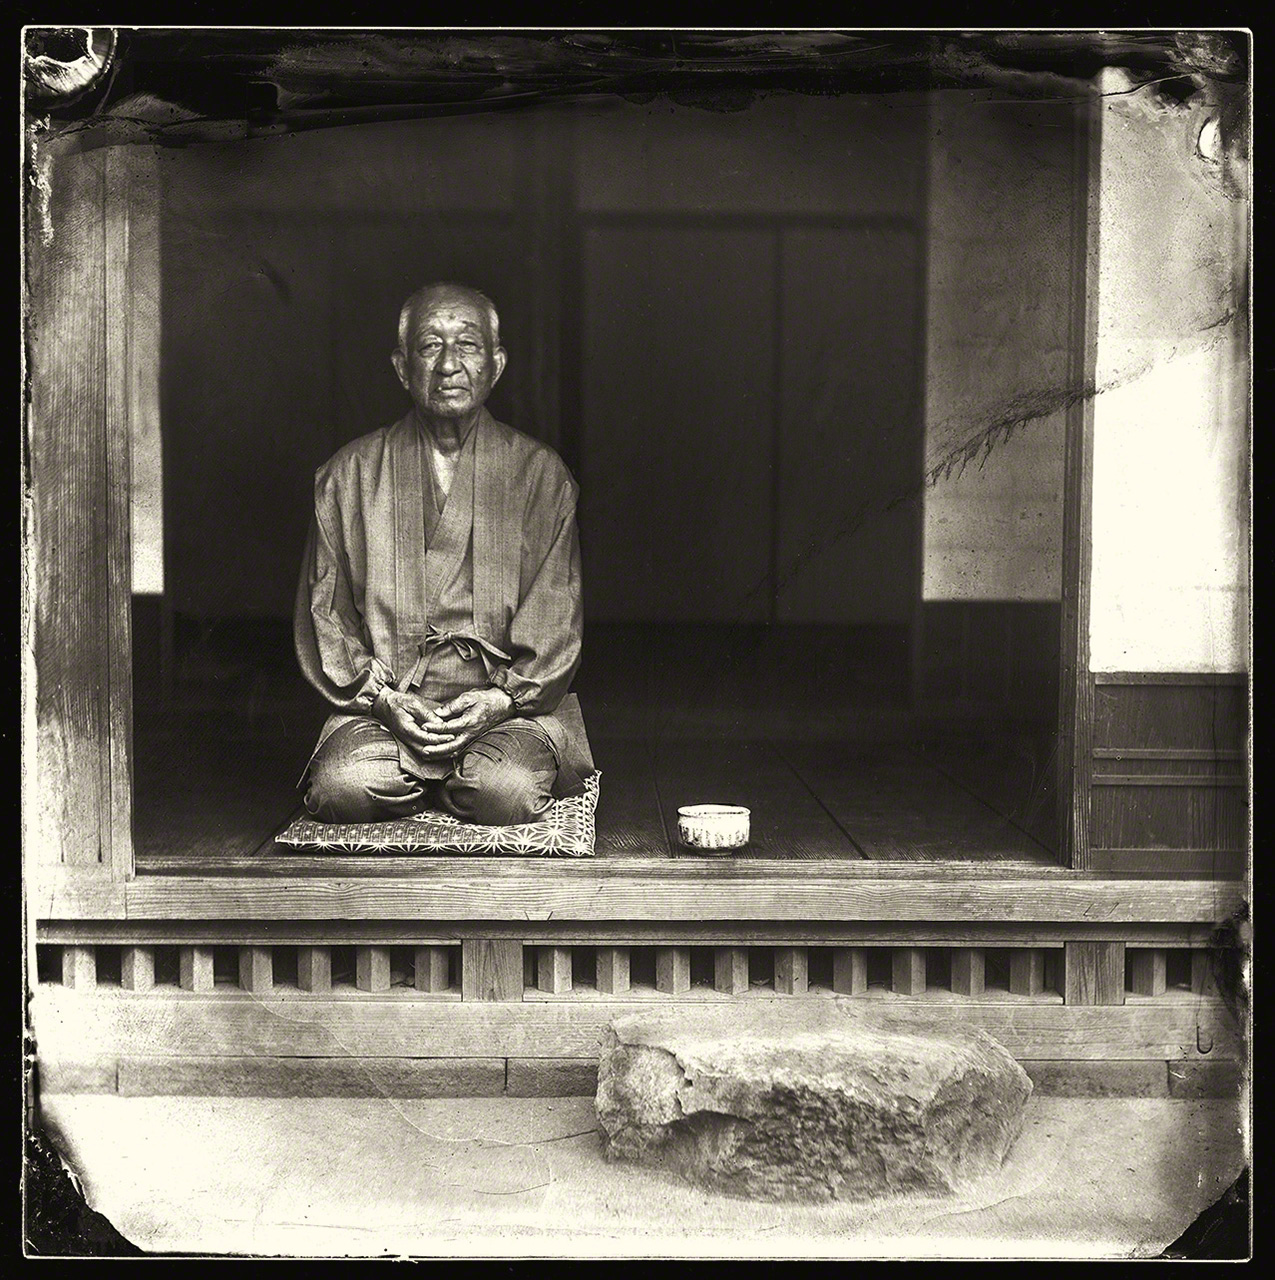 المؤرخ المحلي والحكواتي فوجيؤكا دايسيتسو. كانت قصصه عن منطقة إيزومو أحد مصادر الإلهام الرئيسية لمشروع التصوير الفوتوغرافي هذا.